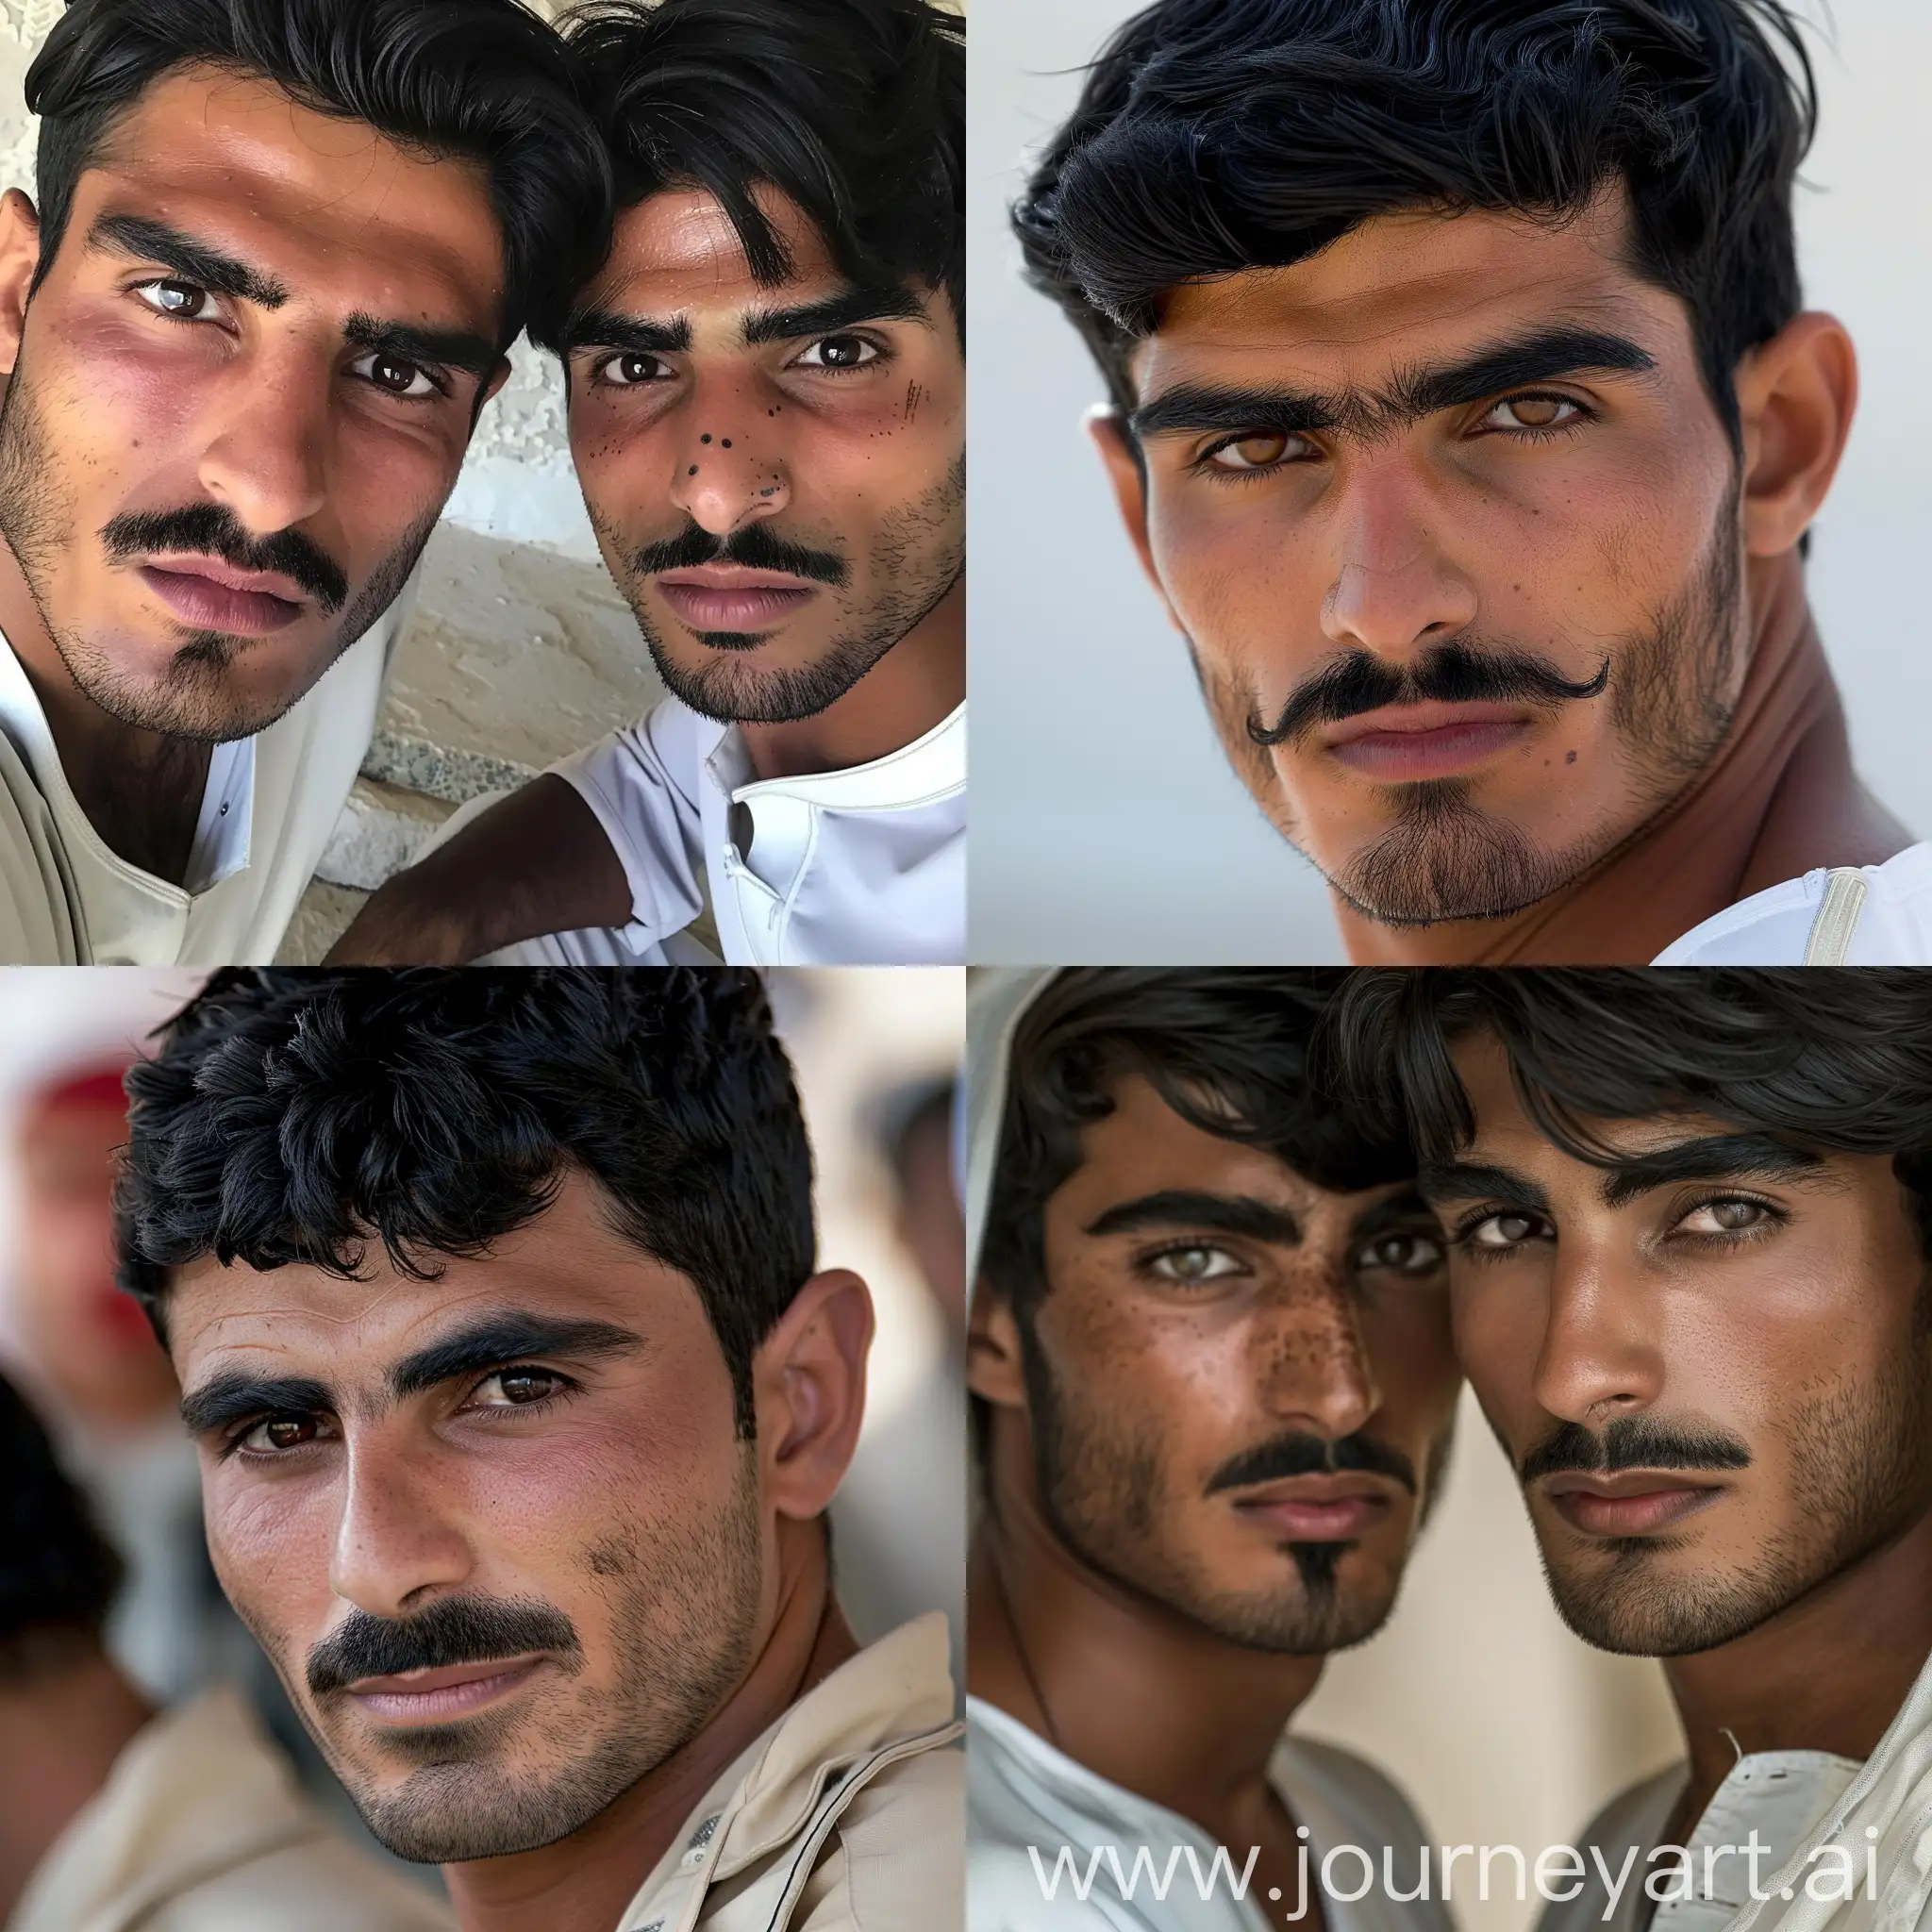 Красивые смуглые иранские парни с чёрными волосами, карими глазами и усами работают телохранителями шейхов в Дубае